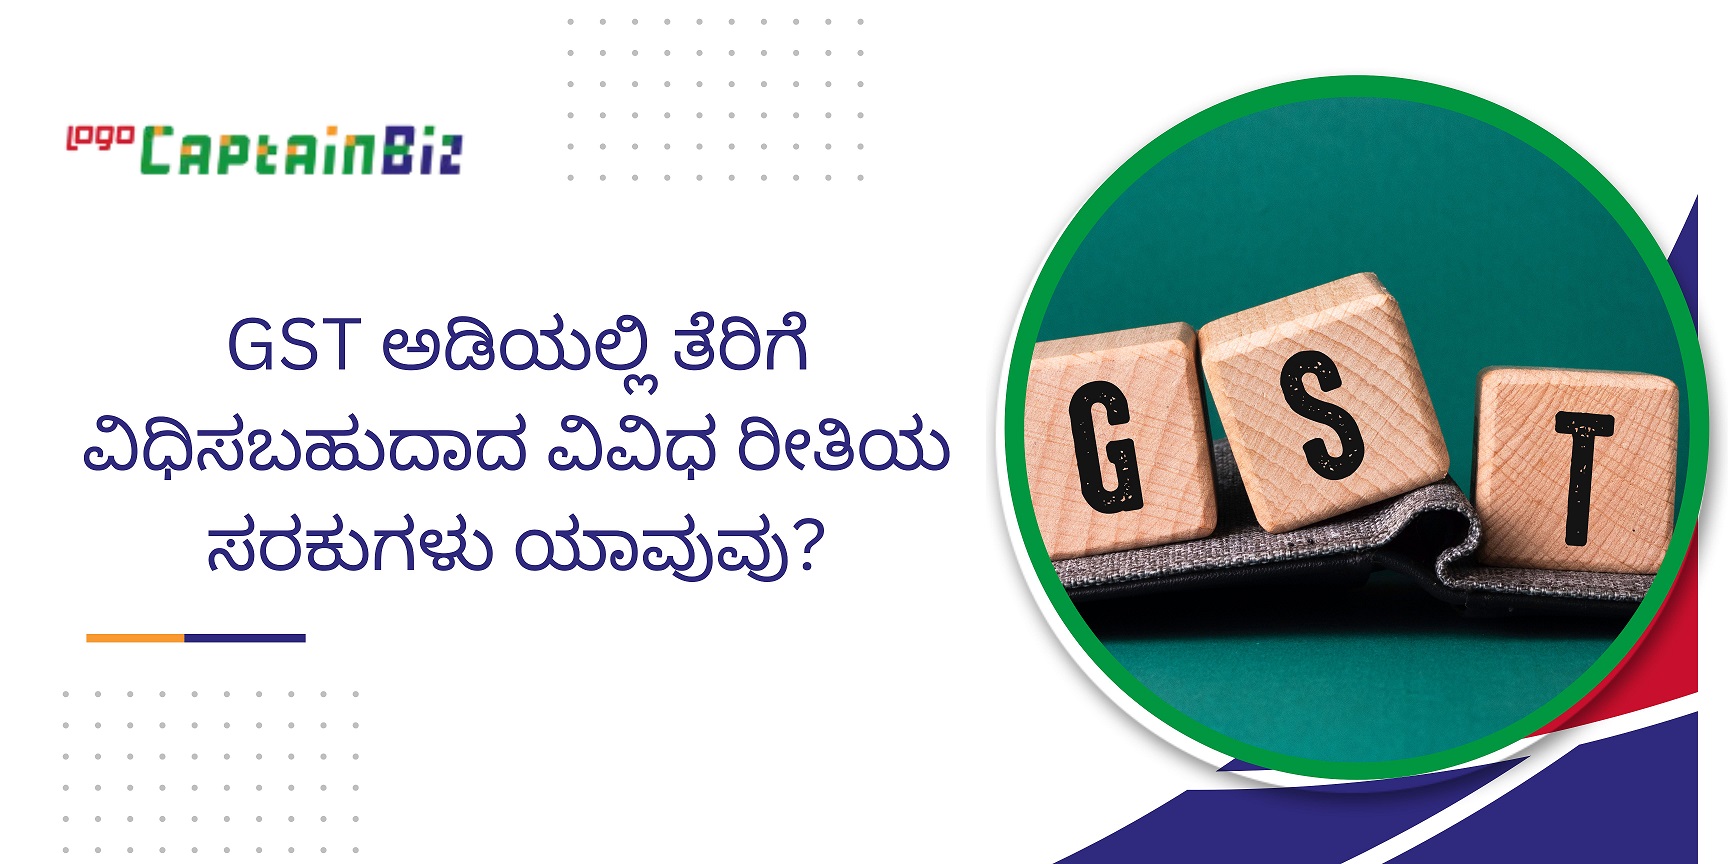 Read more about the article GST ಅಡಿಯಲ್ಲಿ ತೆರಿಗೆ ವಿಧಿಸಬಹುದಾದ ವಿವಿಧ ರೀತಿಯ ಸರಕುಗಳು ಯಾವುವು? GST in Kannada